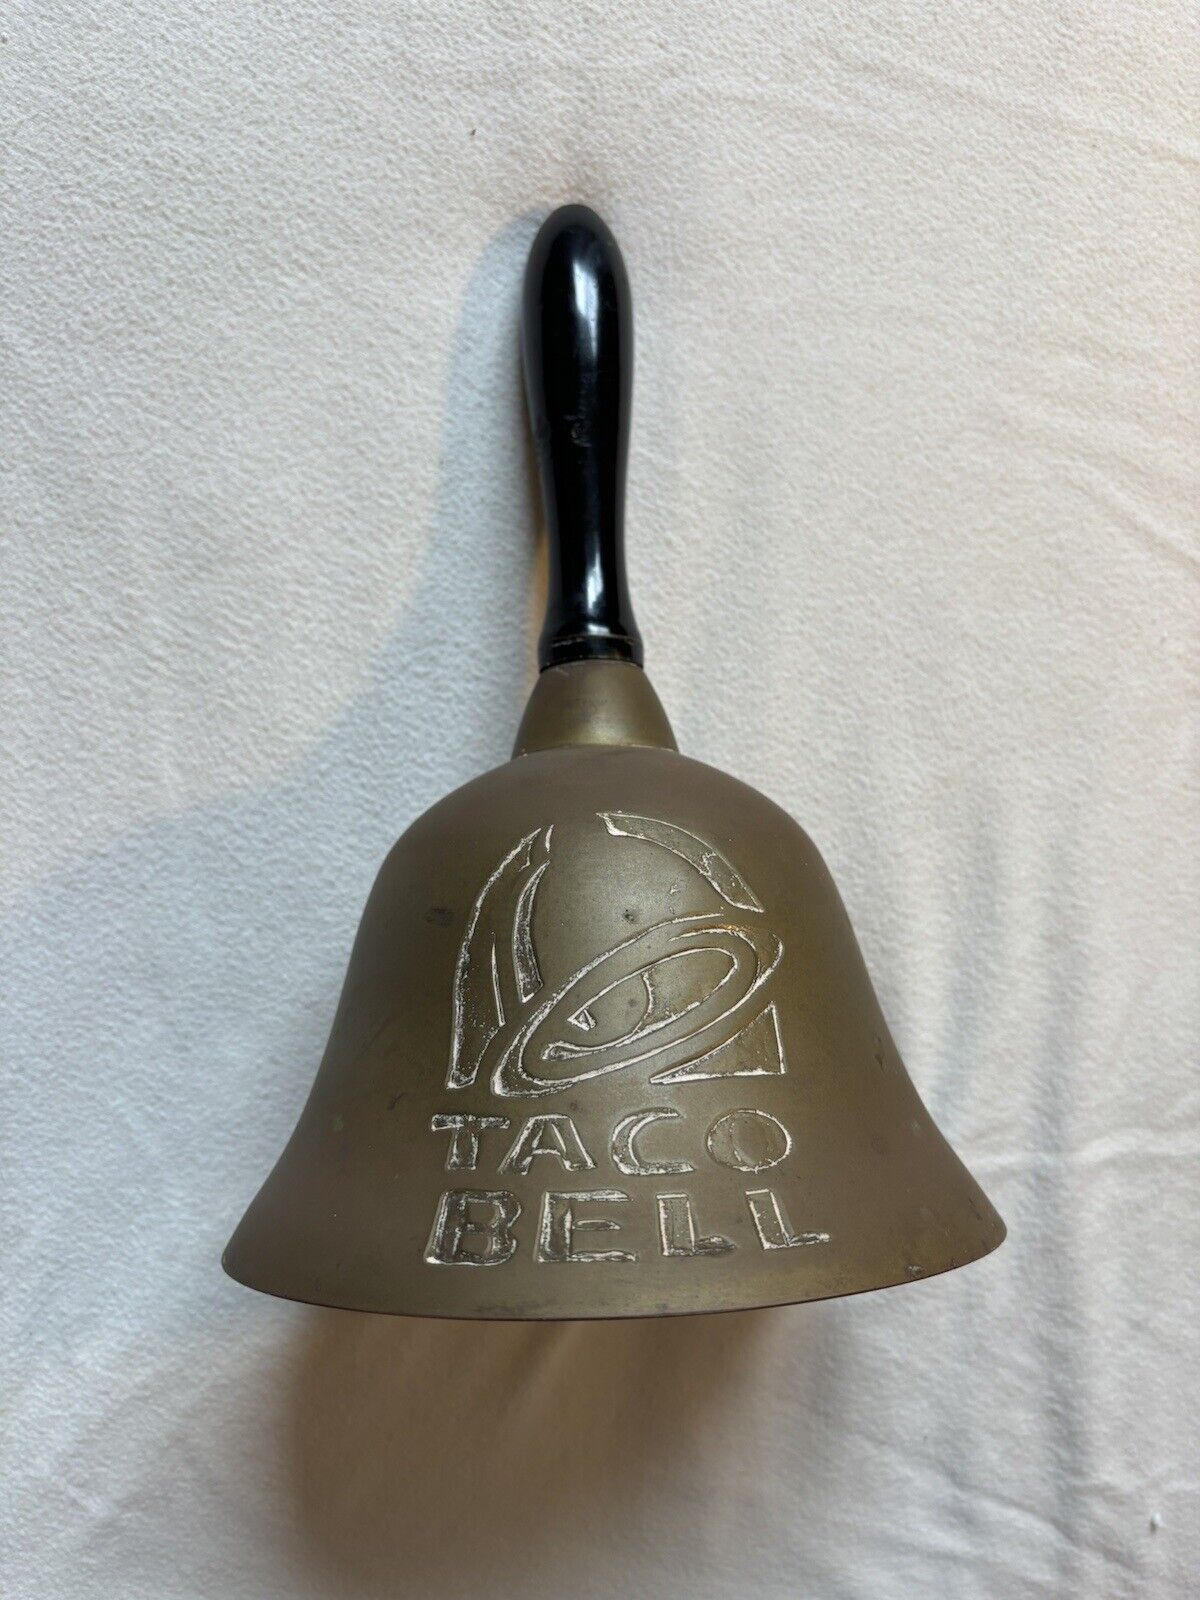 Rare Vintage Taco Bell Original Bell Ringer Handbell